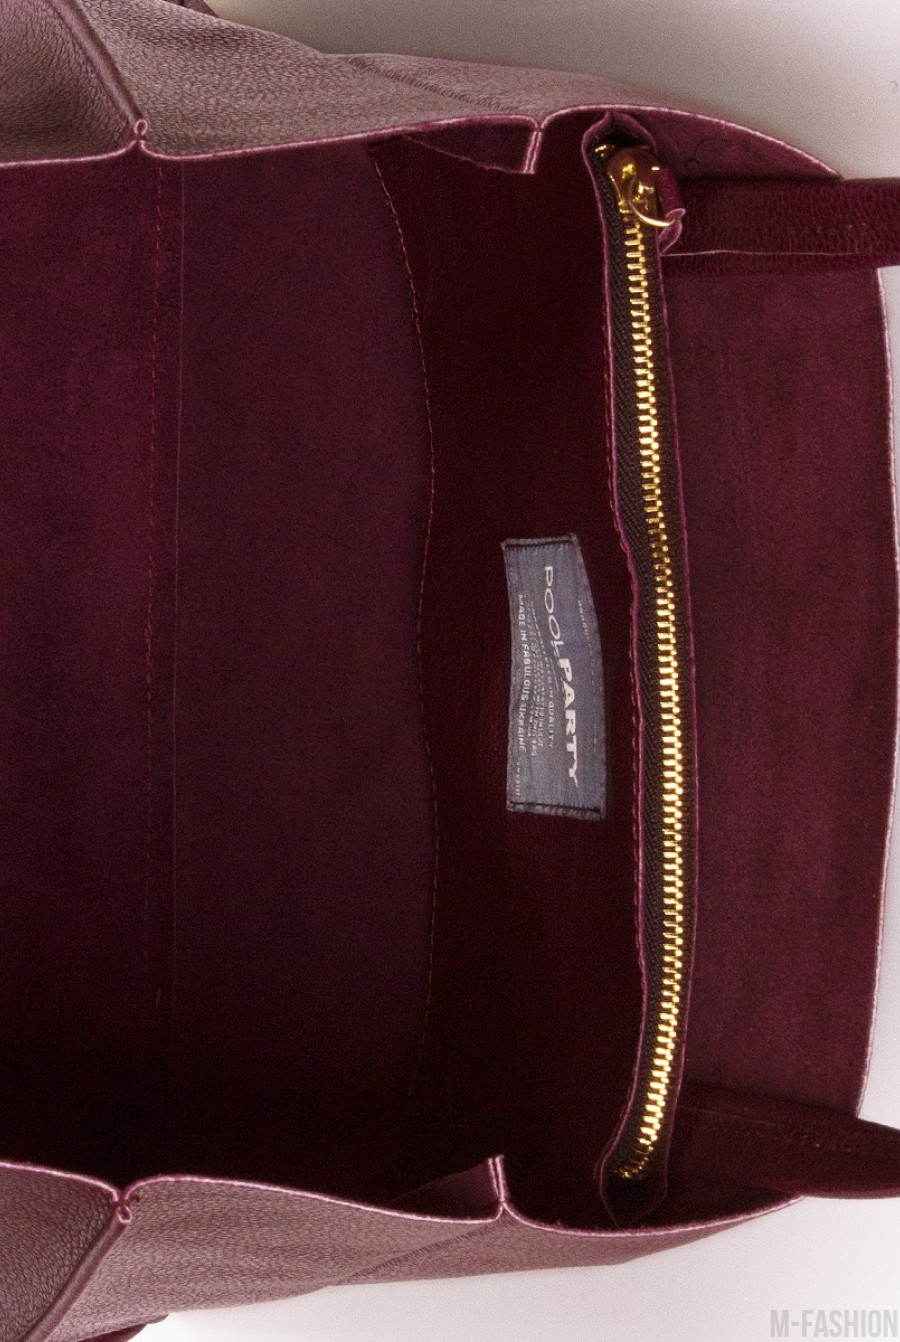 Кожаная бордовая сумка Soho классического дизайна- Фото 3